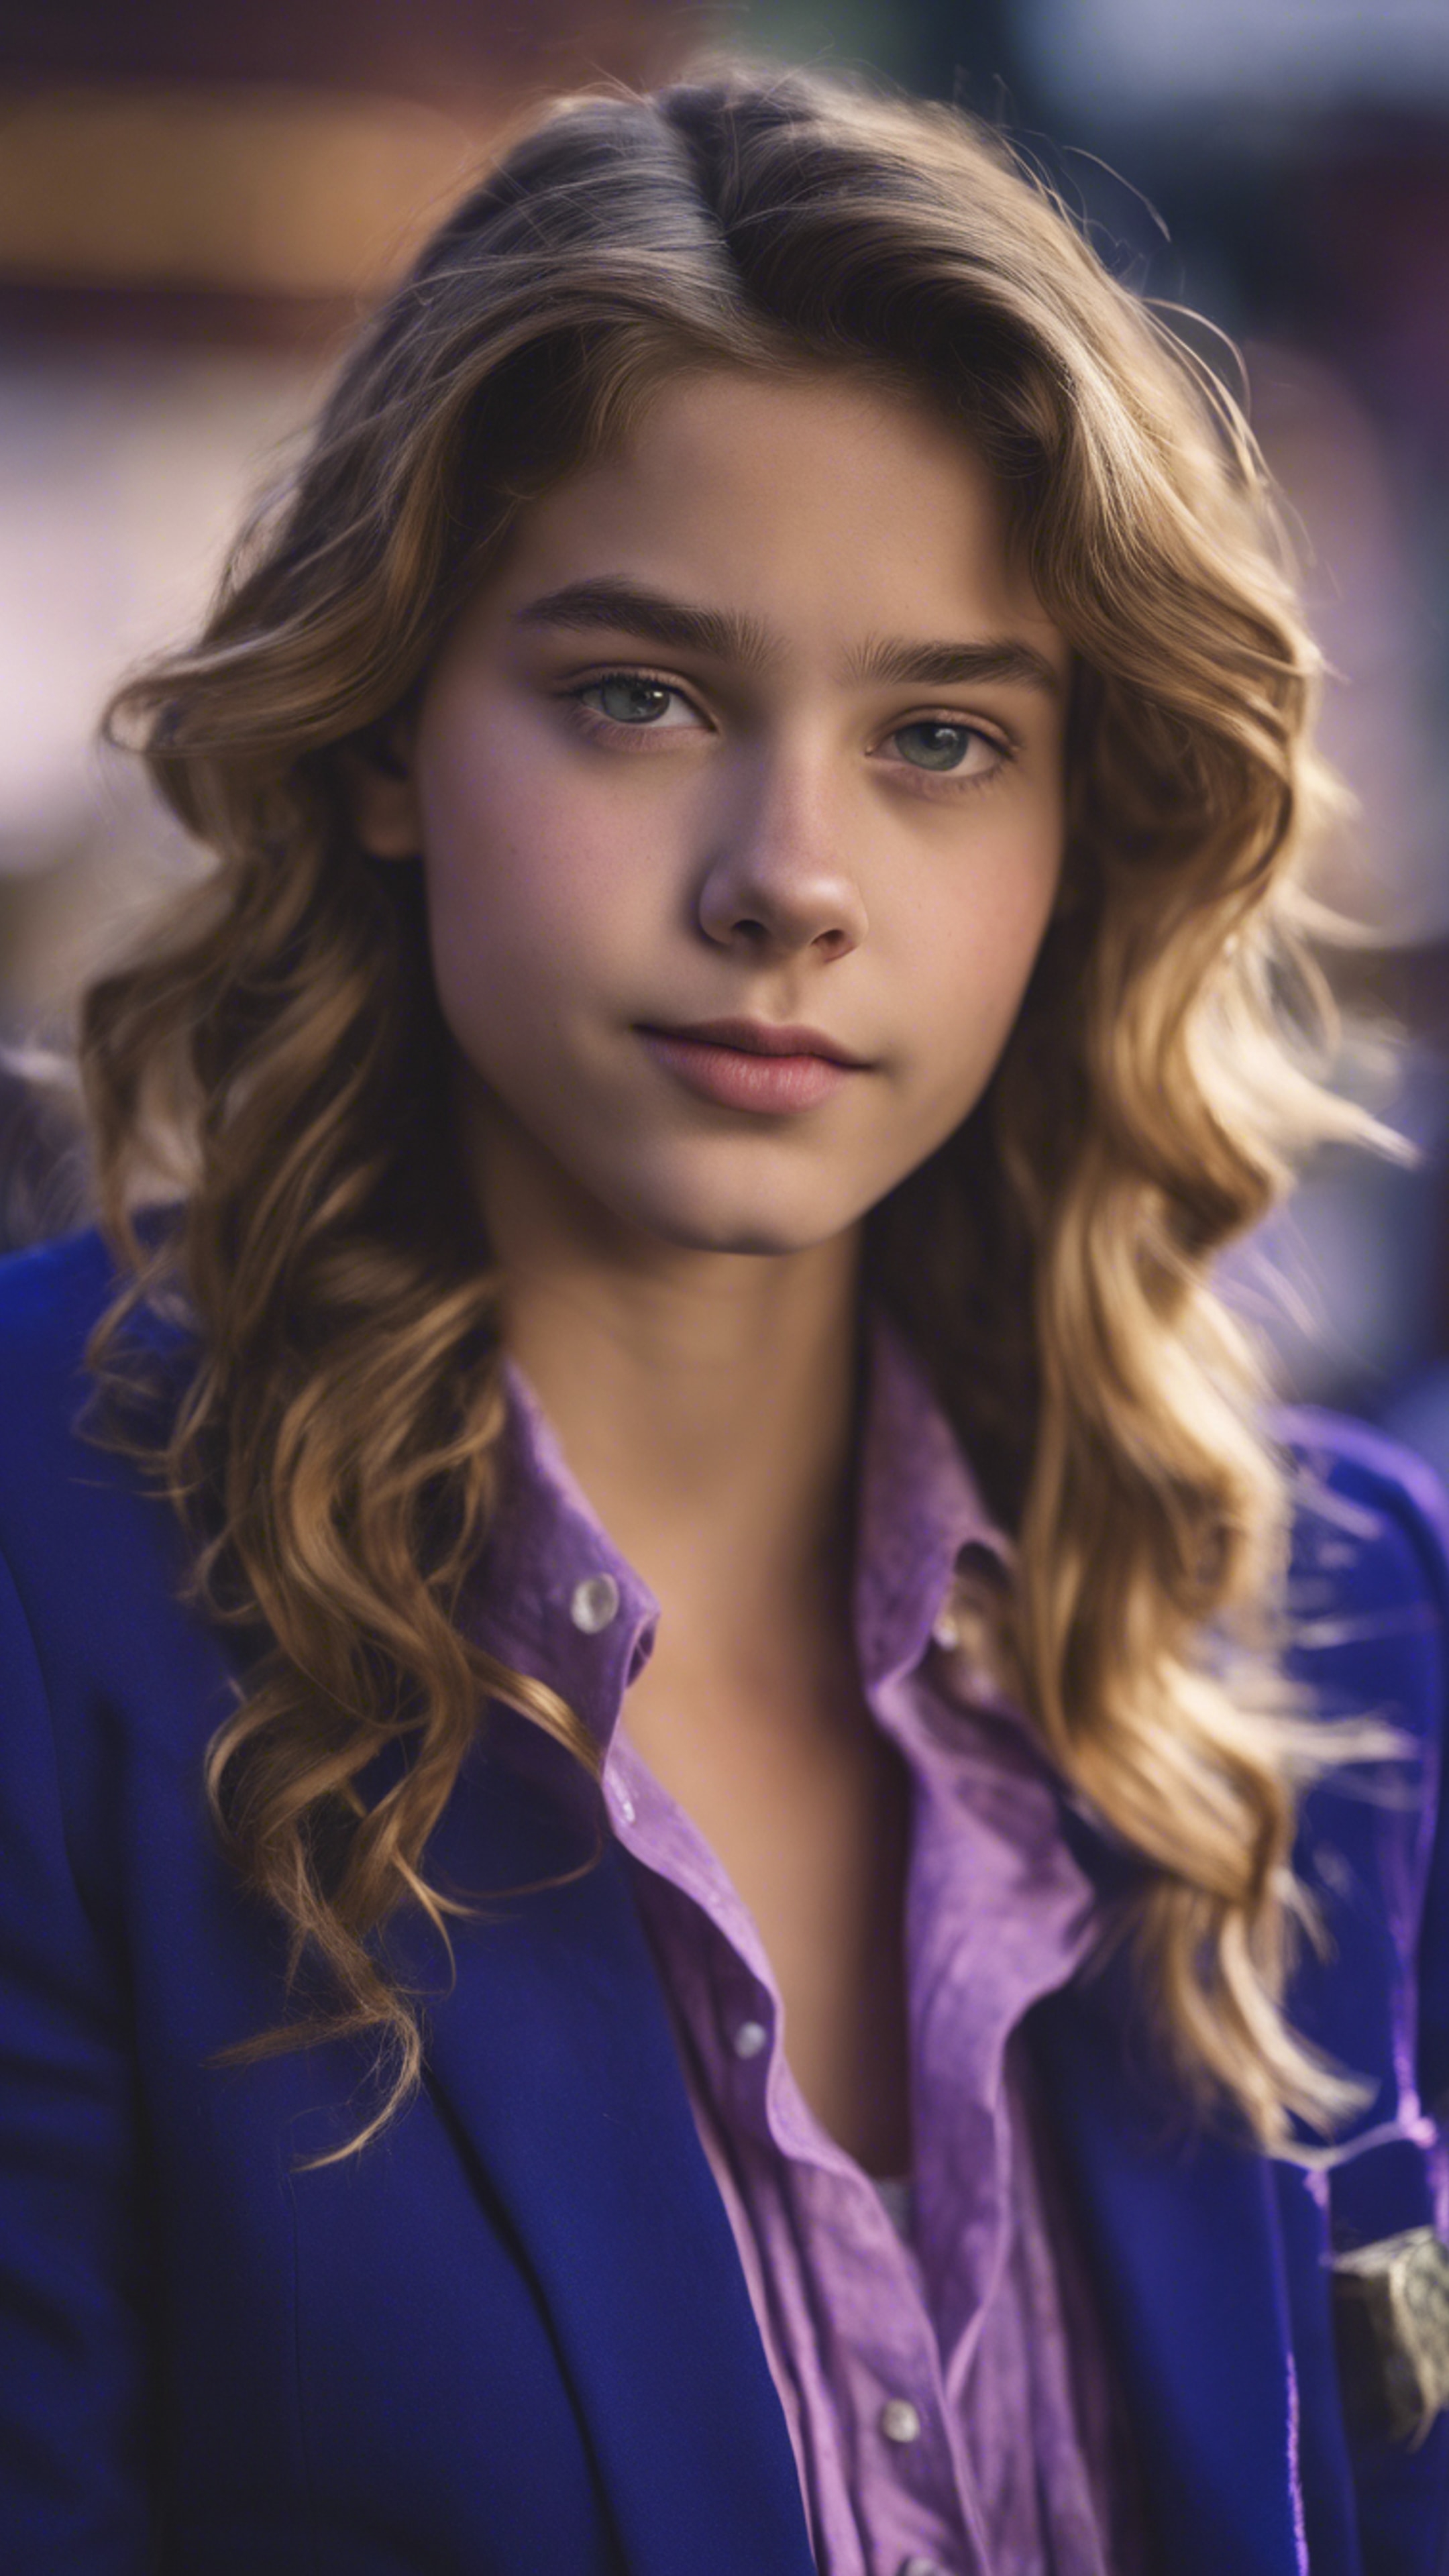 A preppy teenage girl wearing a royal blue blazer with purple button-down shirt. Tapeta na zeď[785e4ff270ea4e79b652]